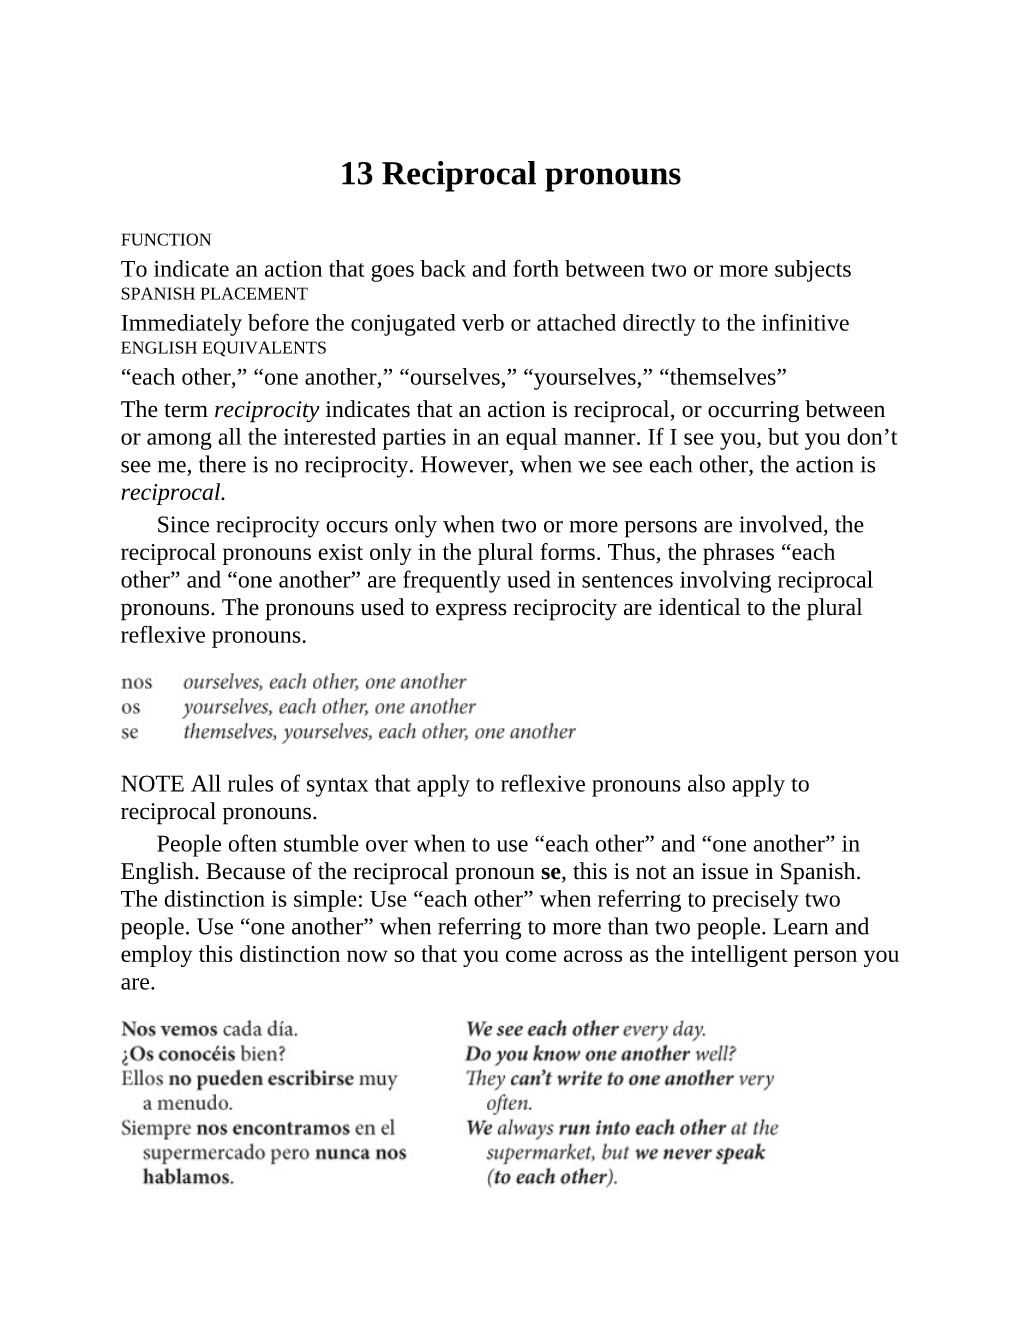 13 Reciprocal Pronouns